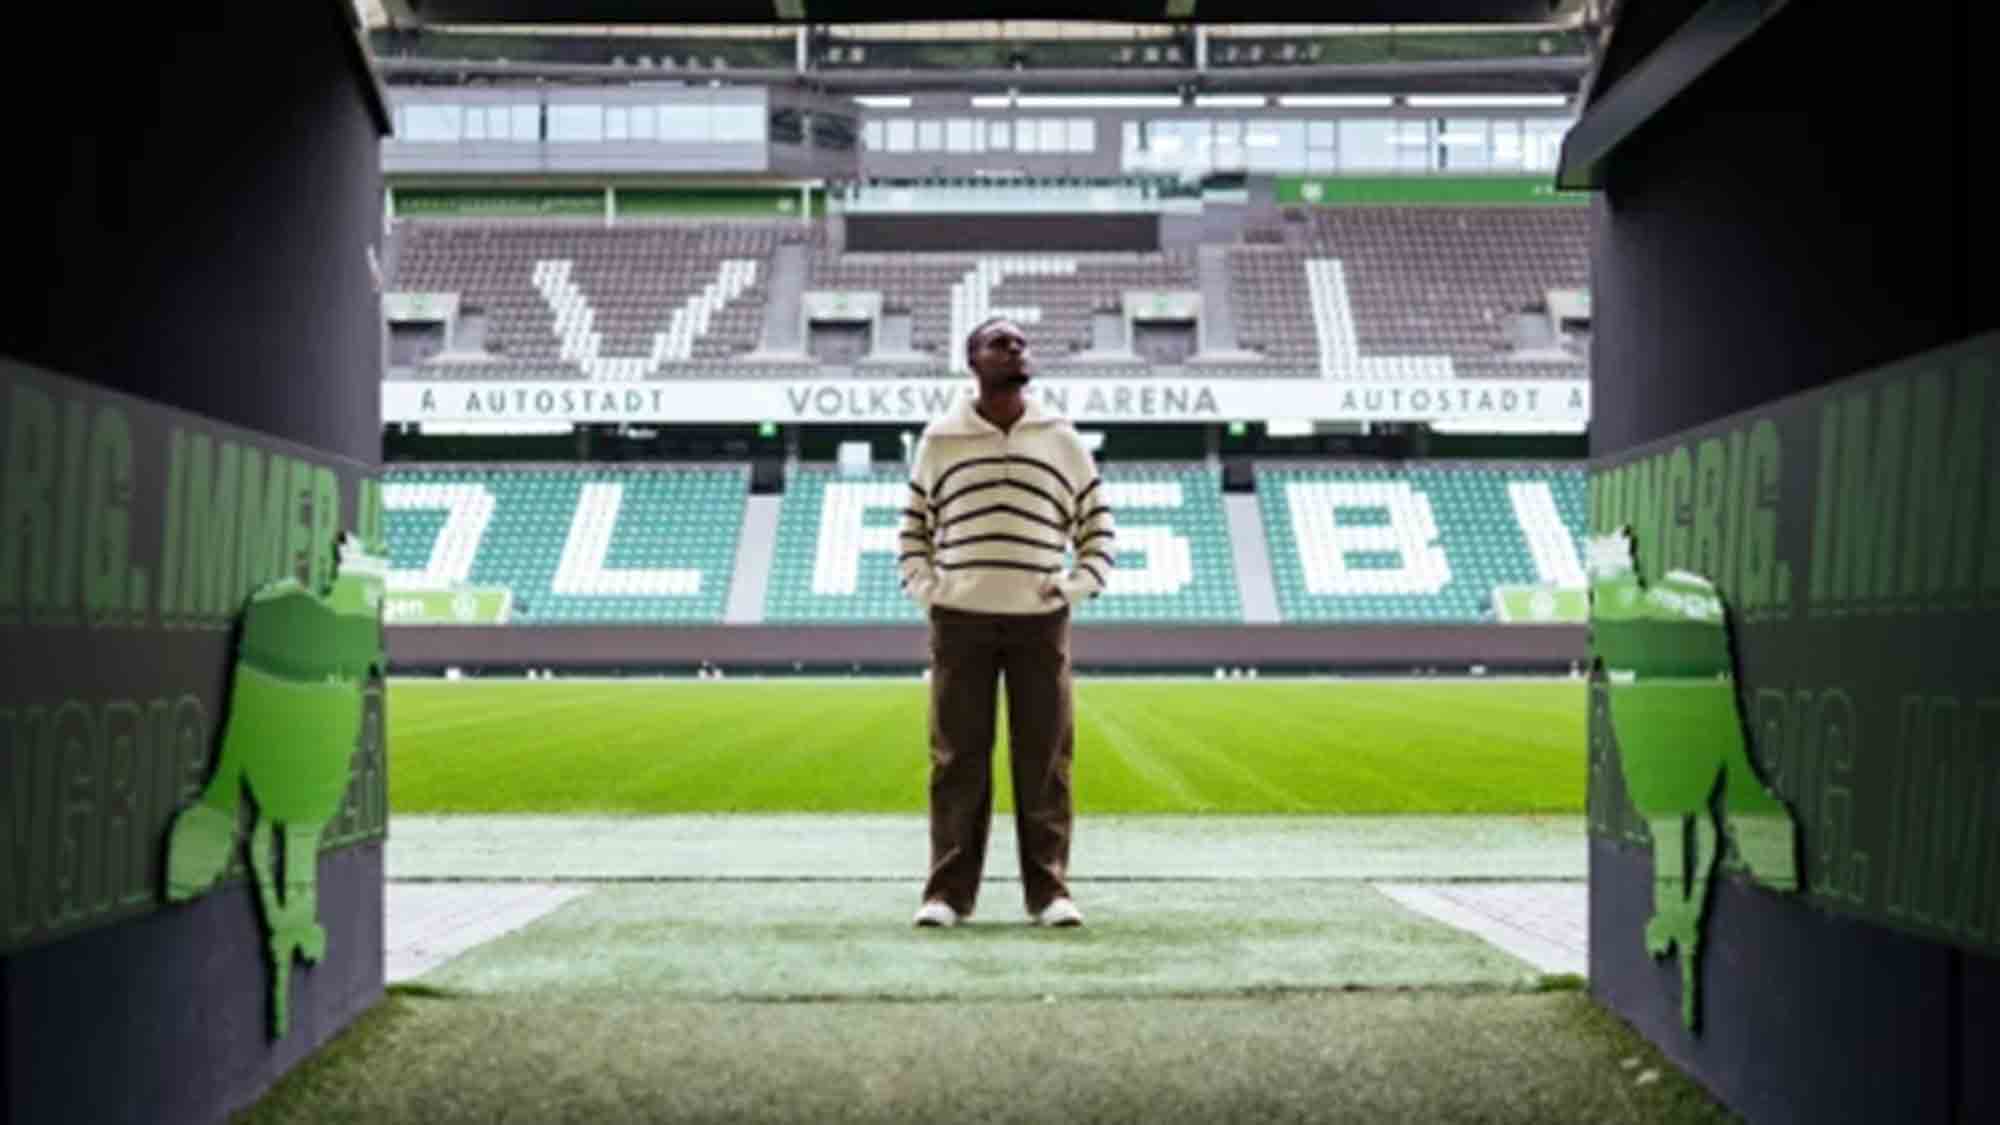 World Vision Deutschland, Fußballprofi Ridle Baku: »Möchte denjenigen helfen, die es schwer im Leben haben«